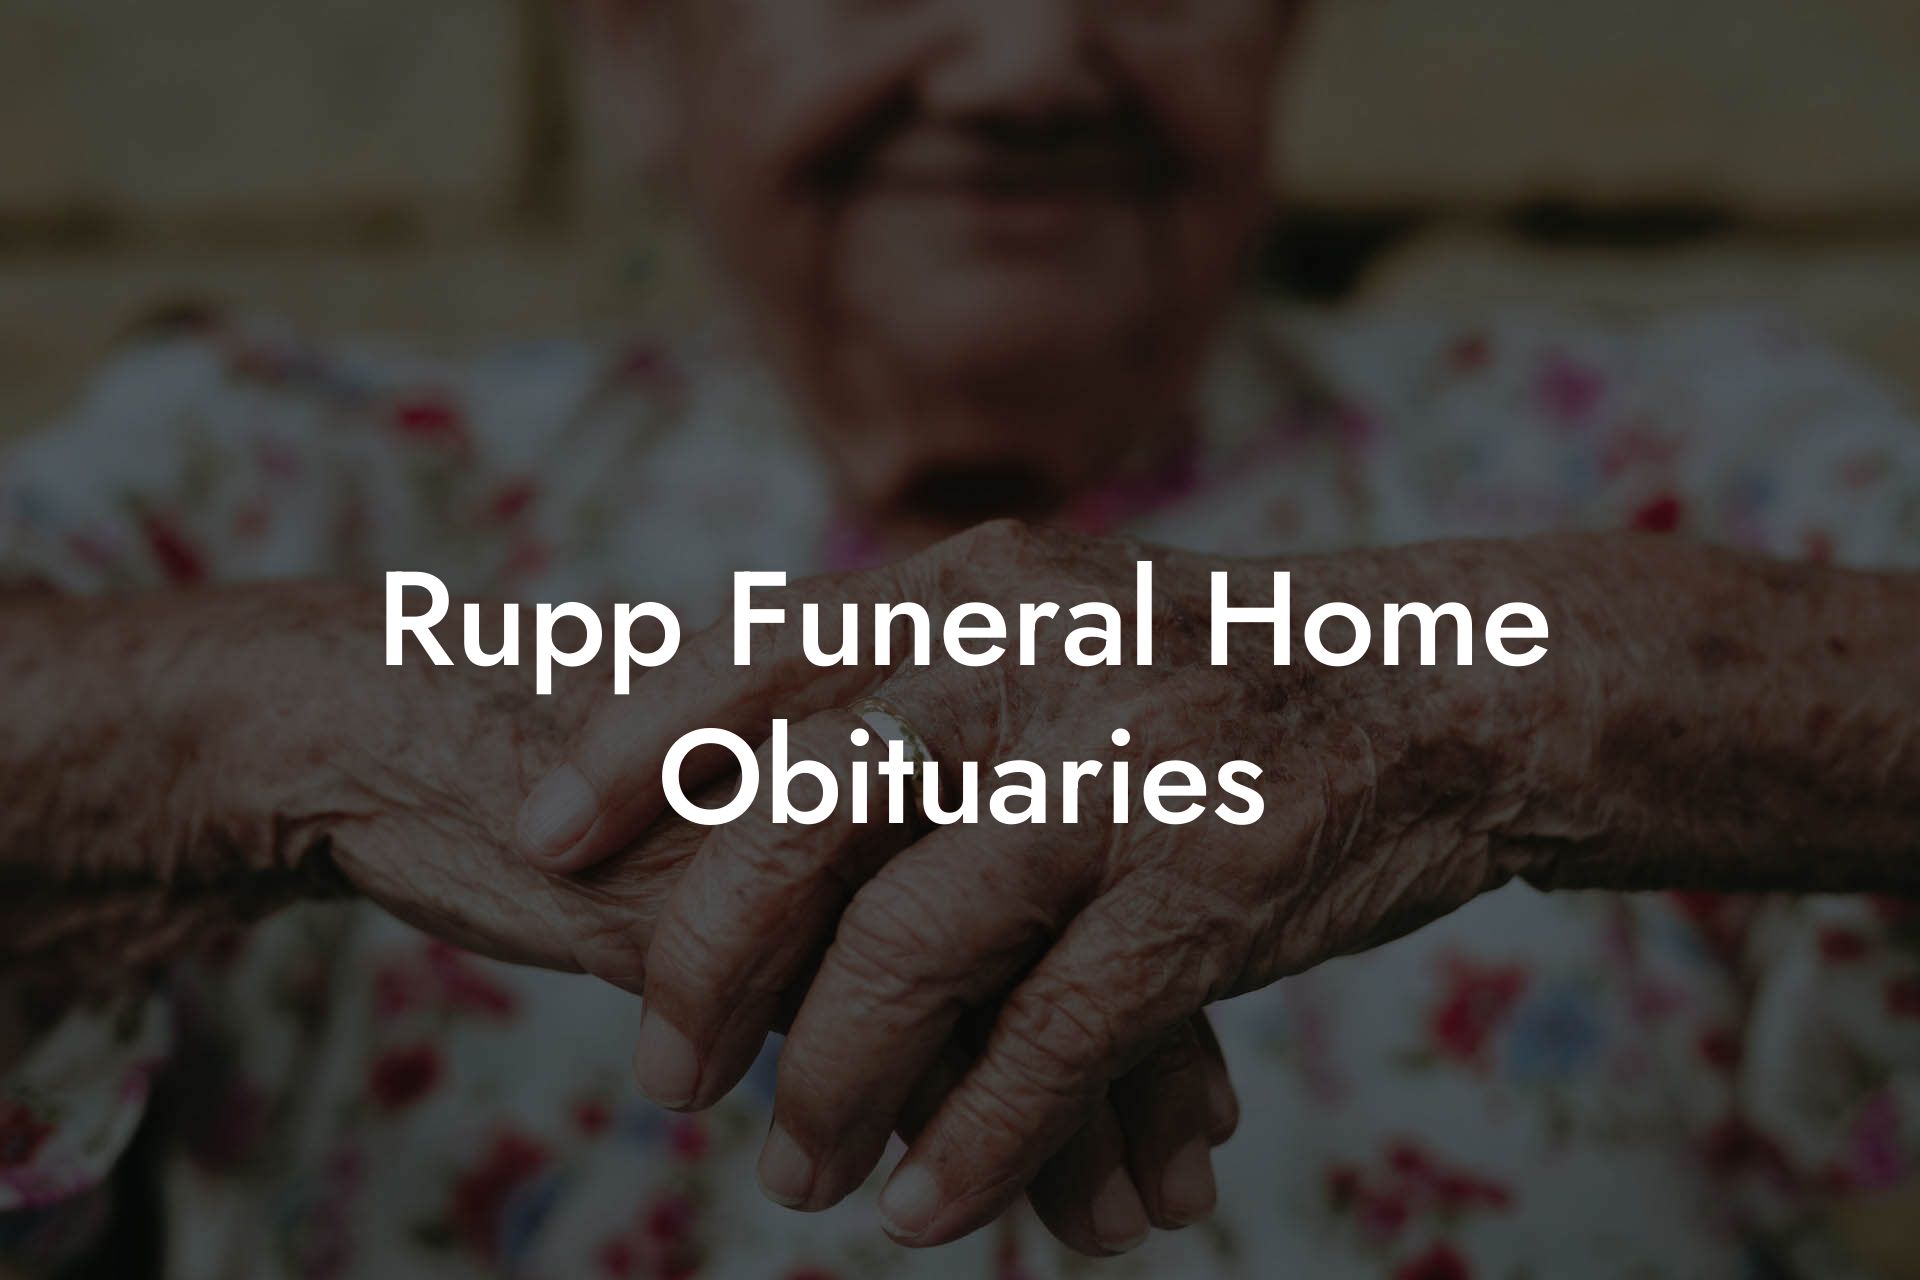 Rupp Funeral Home Obituaries